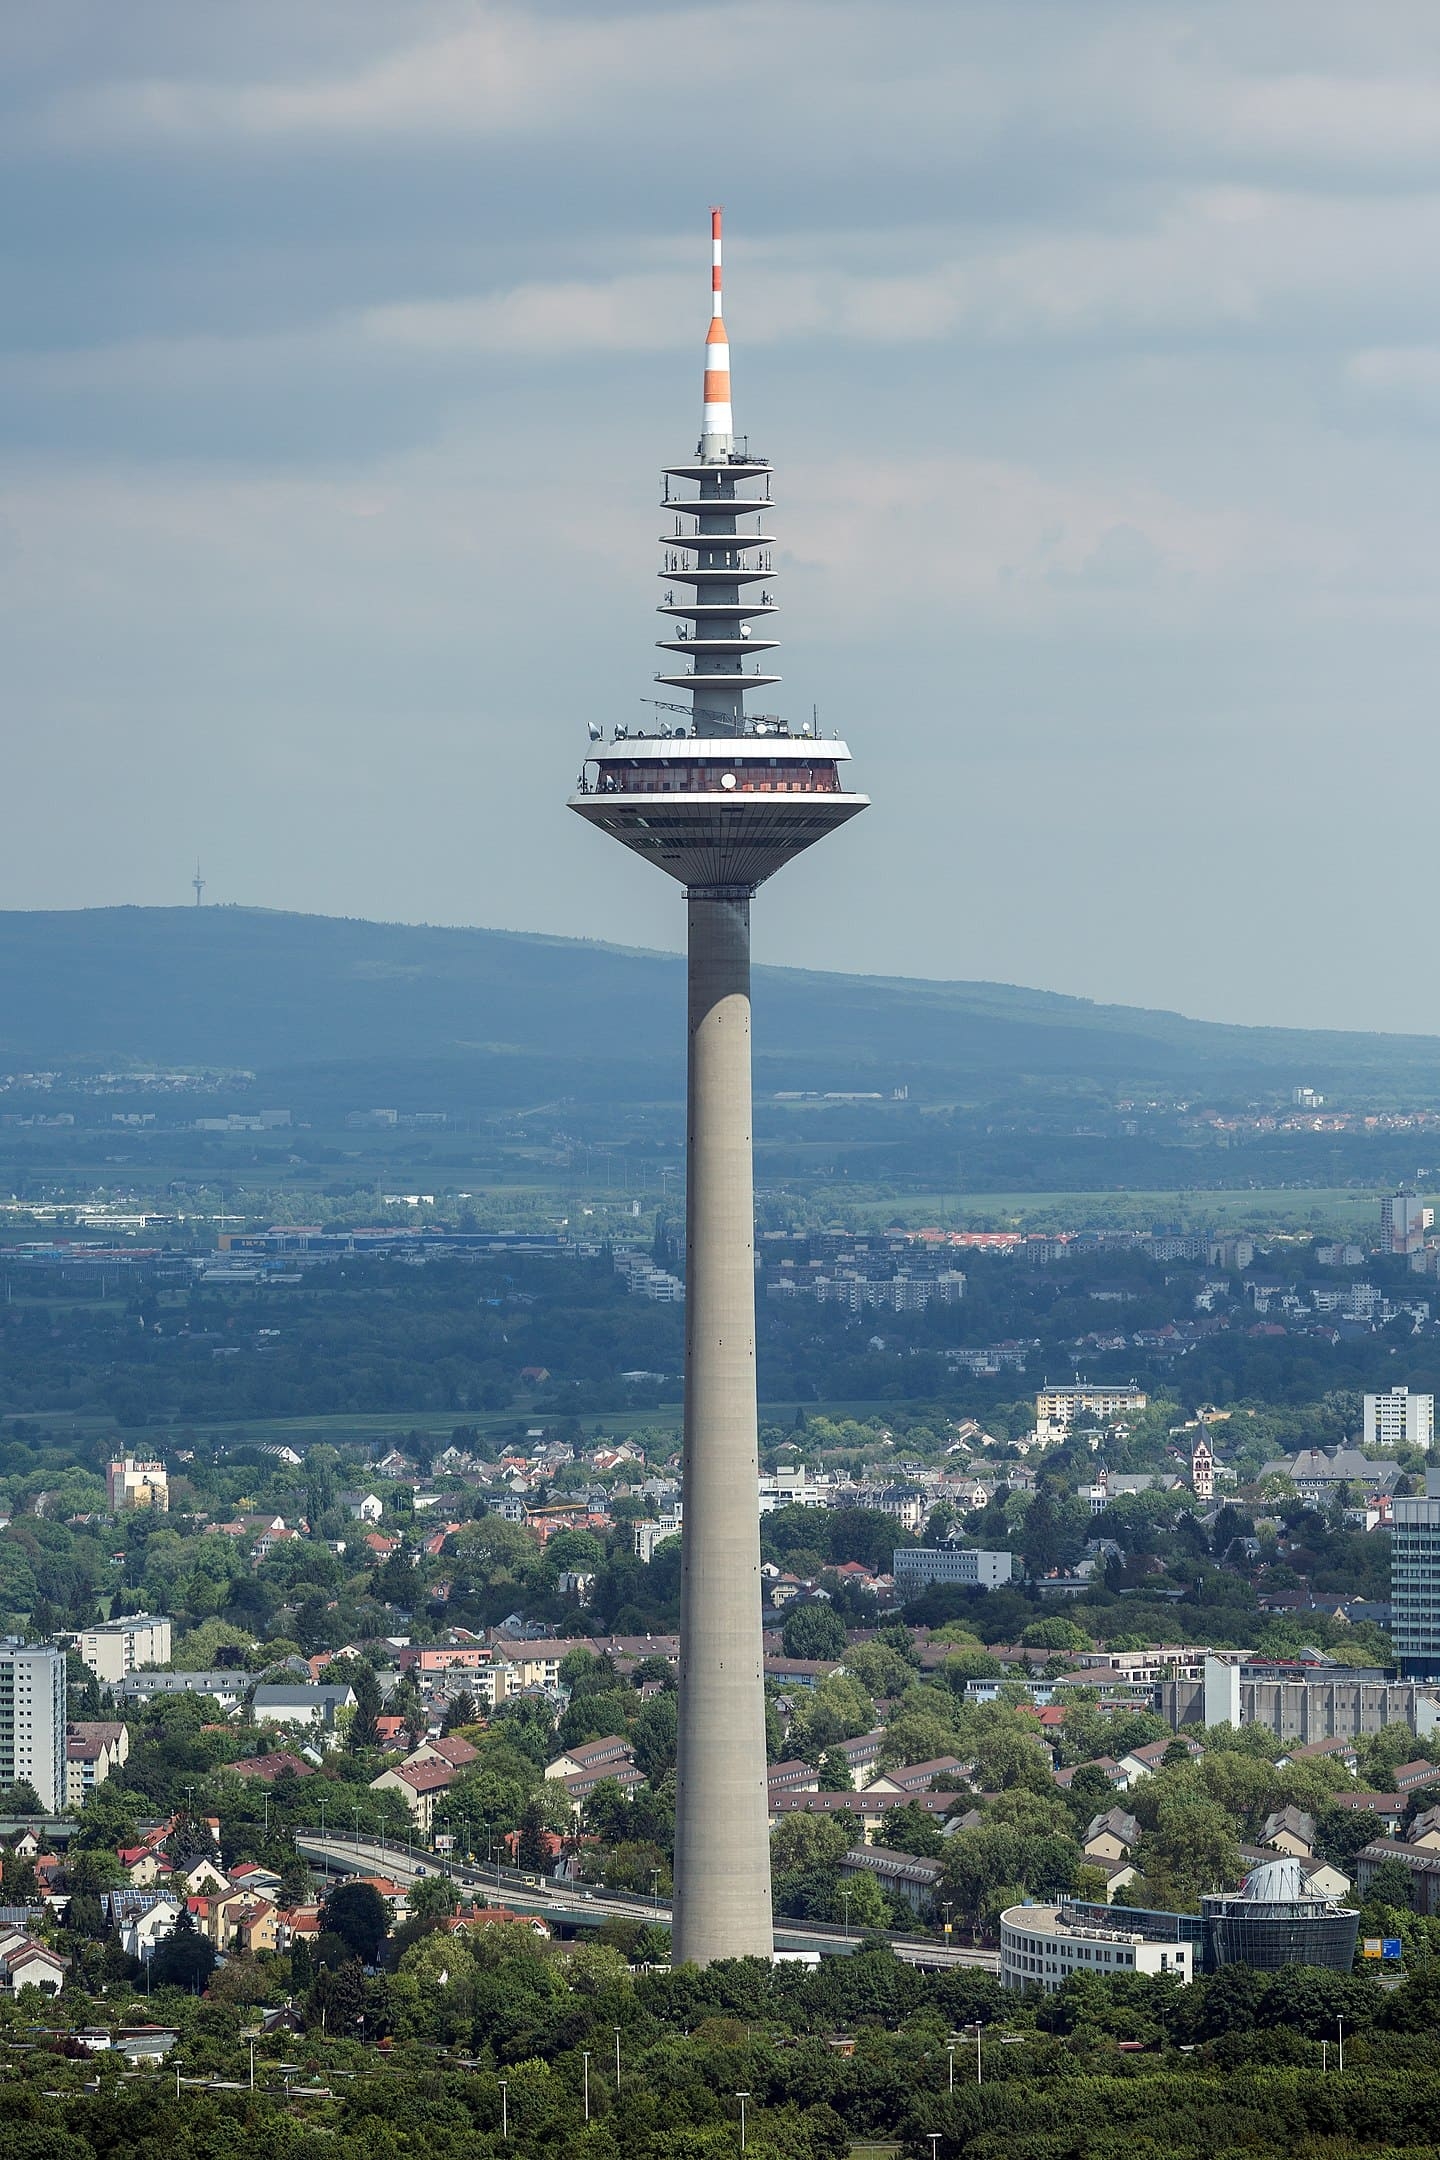 Europaturm - 337 metros - Alemanha - Está localizada em Frankfurt e foi concluída em 1979 para fazer transmissão de sinais de rádio e TV. Até julho de 2019, foi considerada a 23ª maior torre de estrutura independente do mundo. Reprodução: Flipar